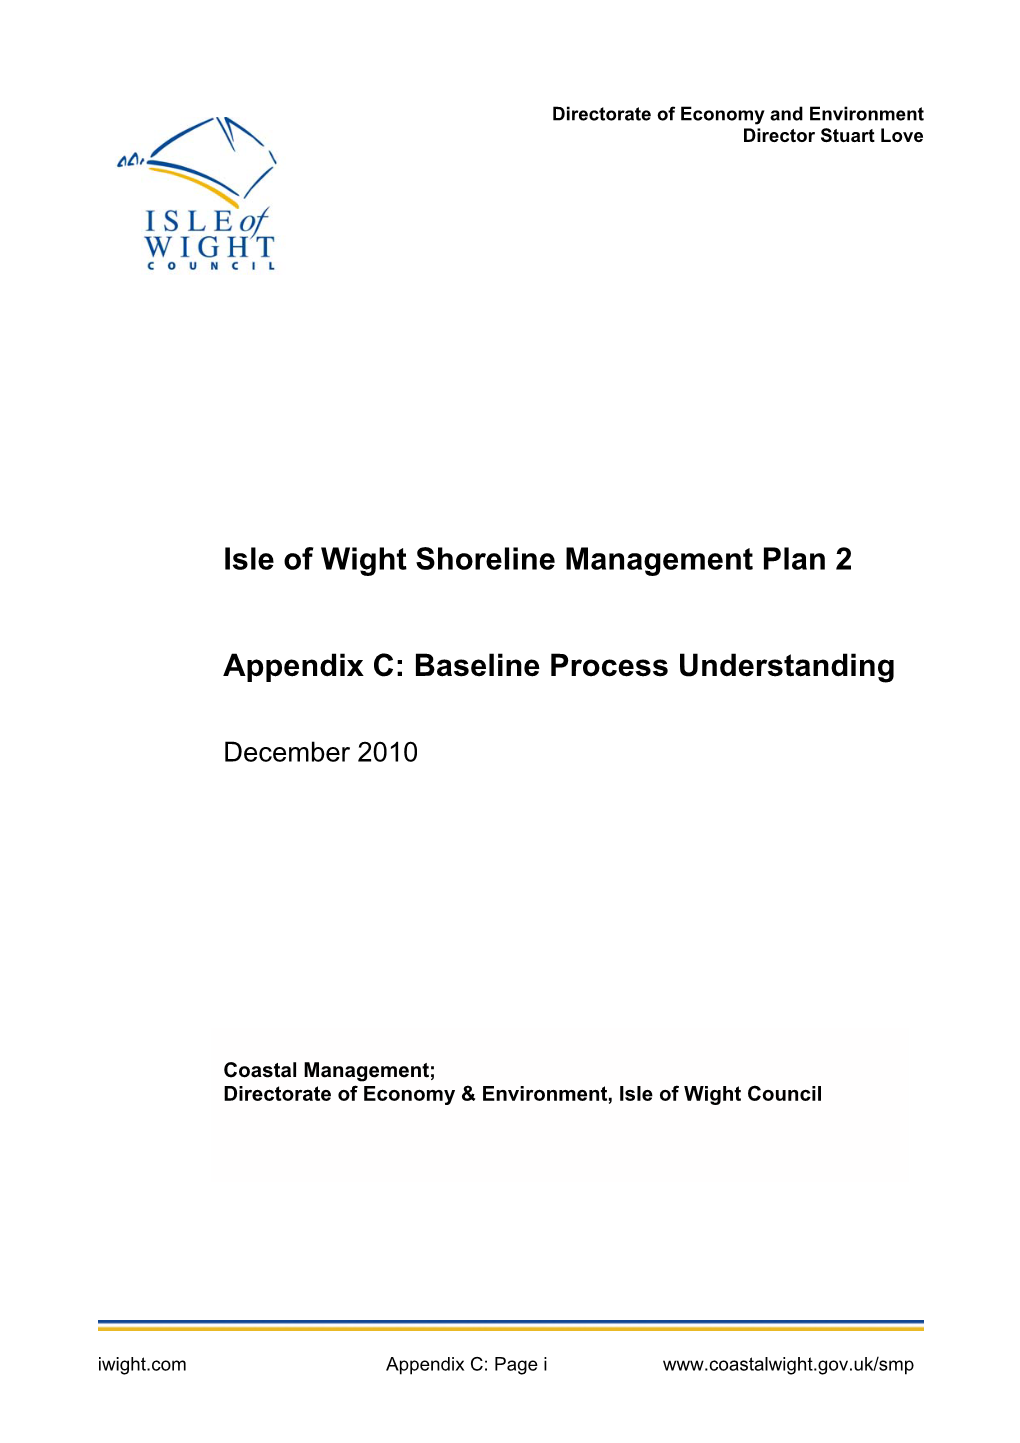 Appendix C: Baseline Process Understanding